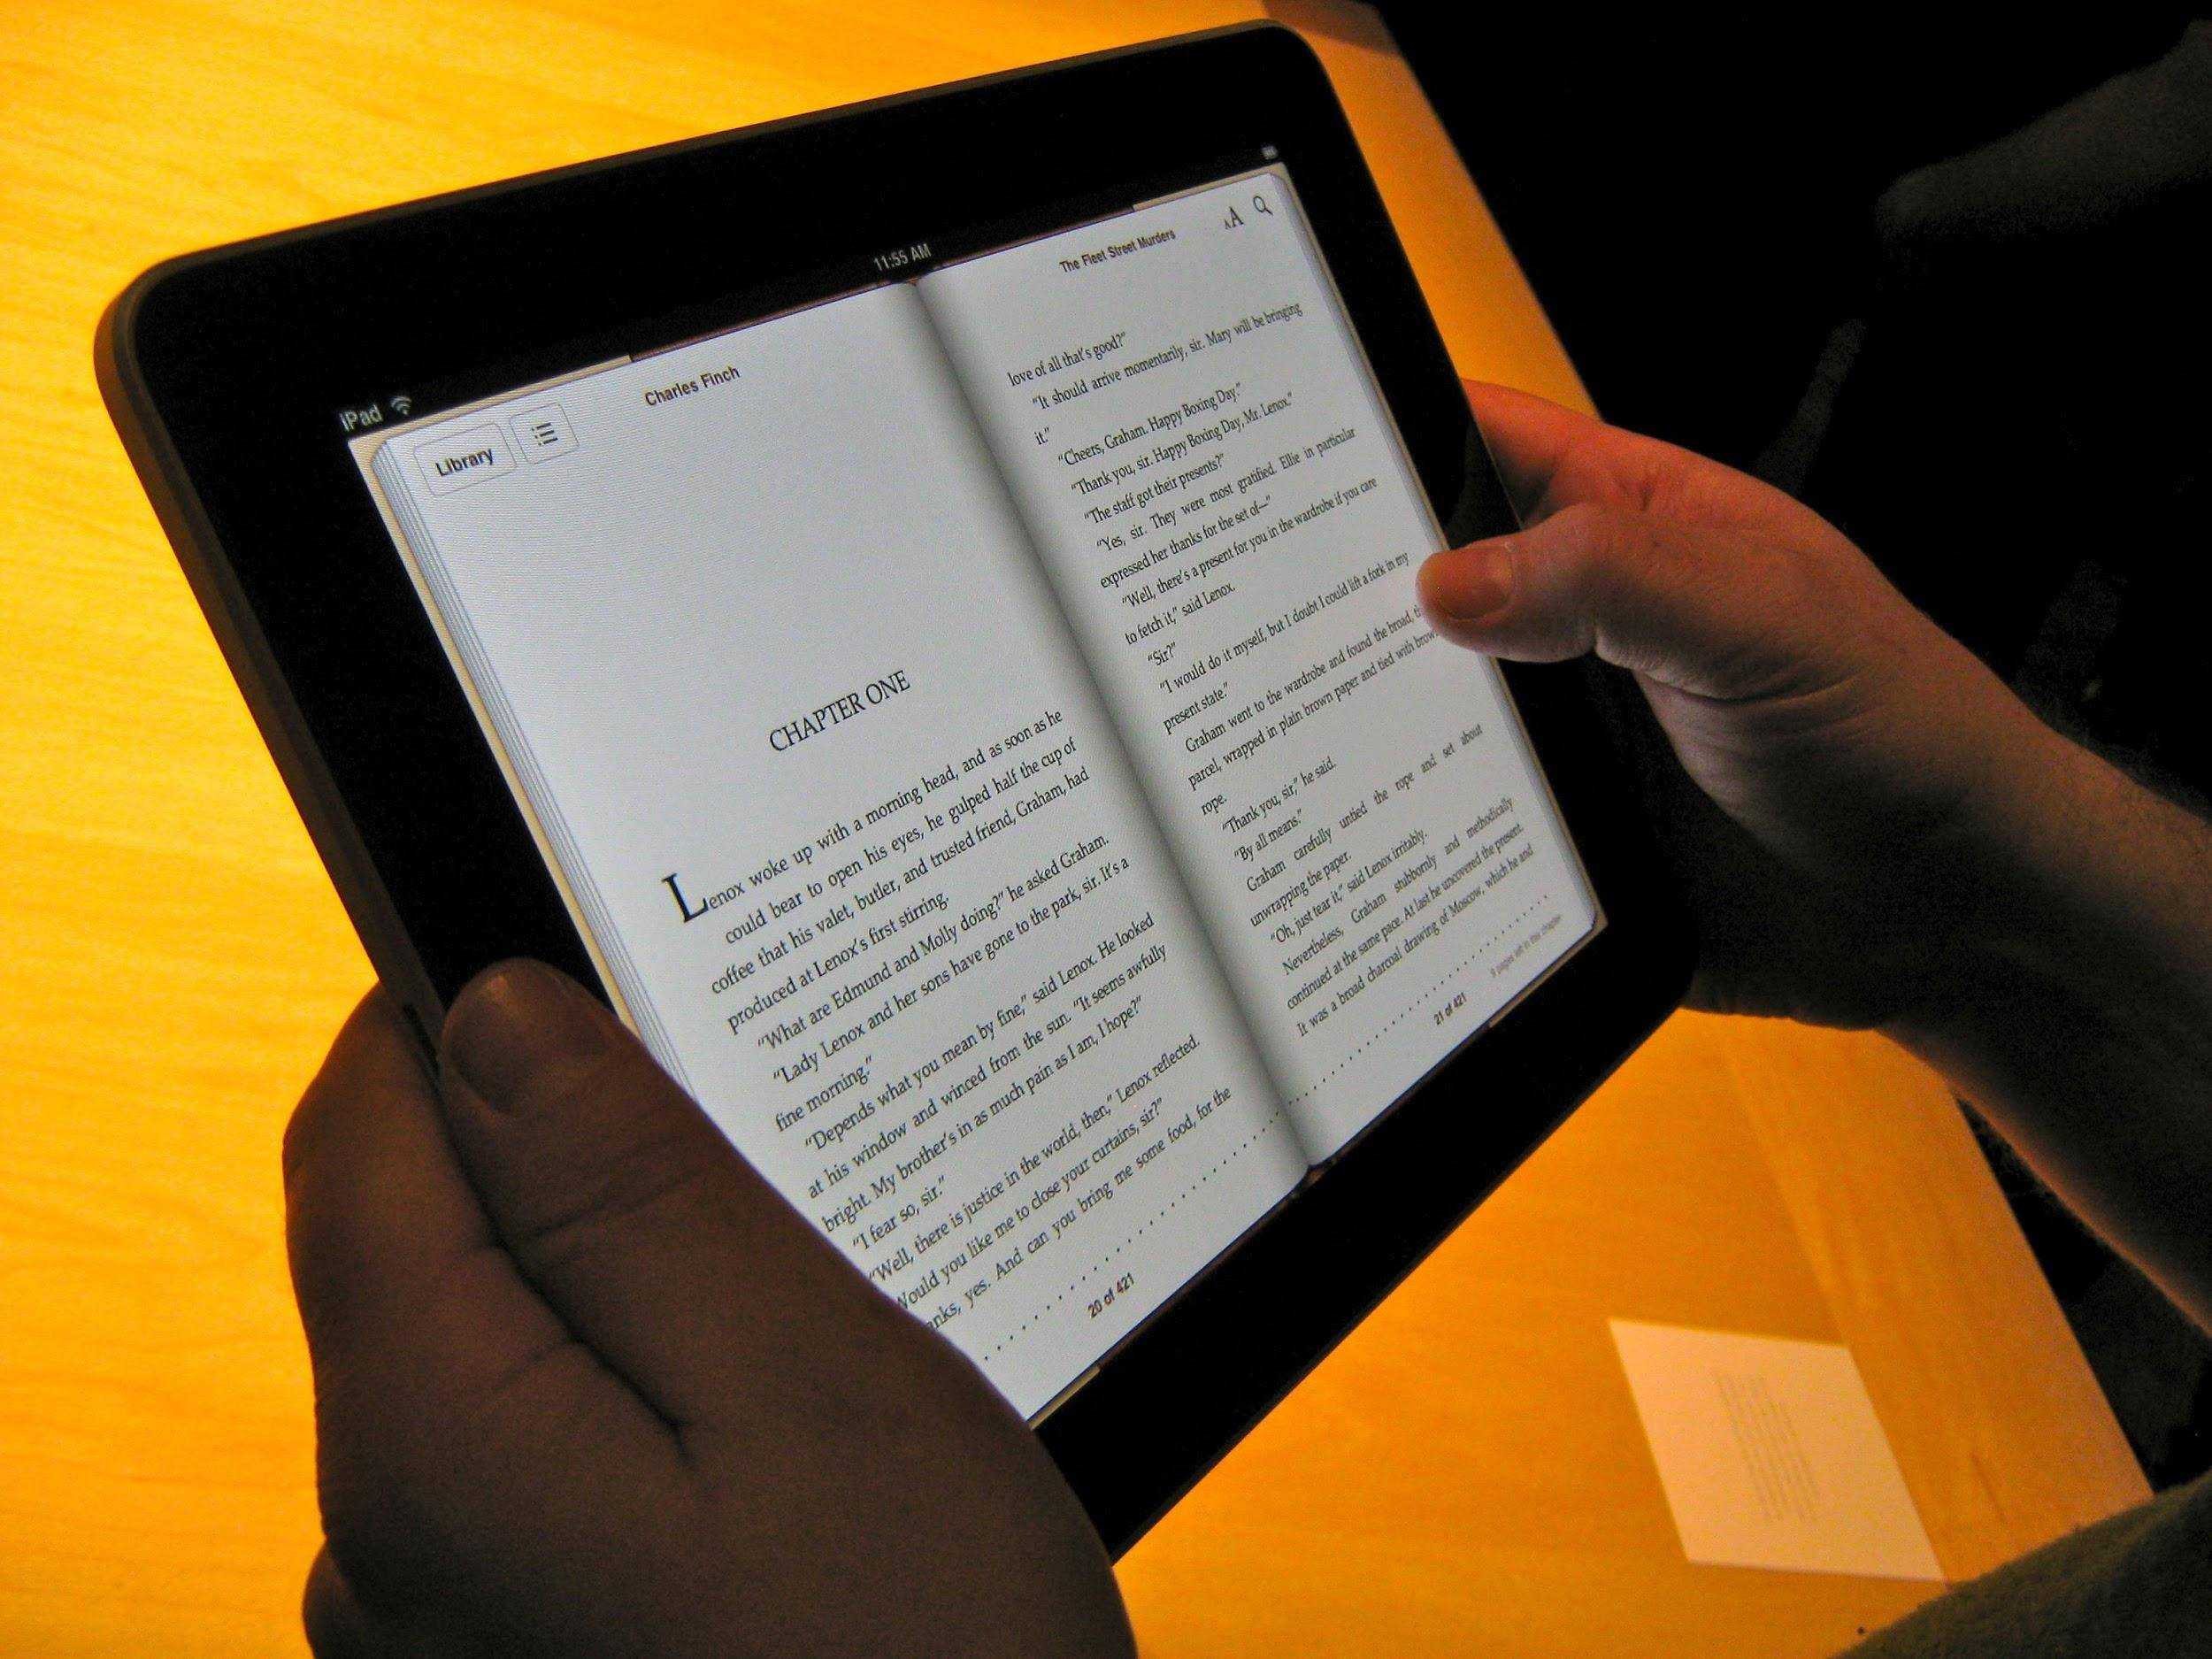 Что лучше для чтения – планшет или электронная книга? электронная книга или планшет - что выбрать для чтения?